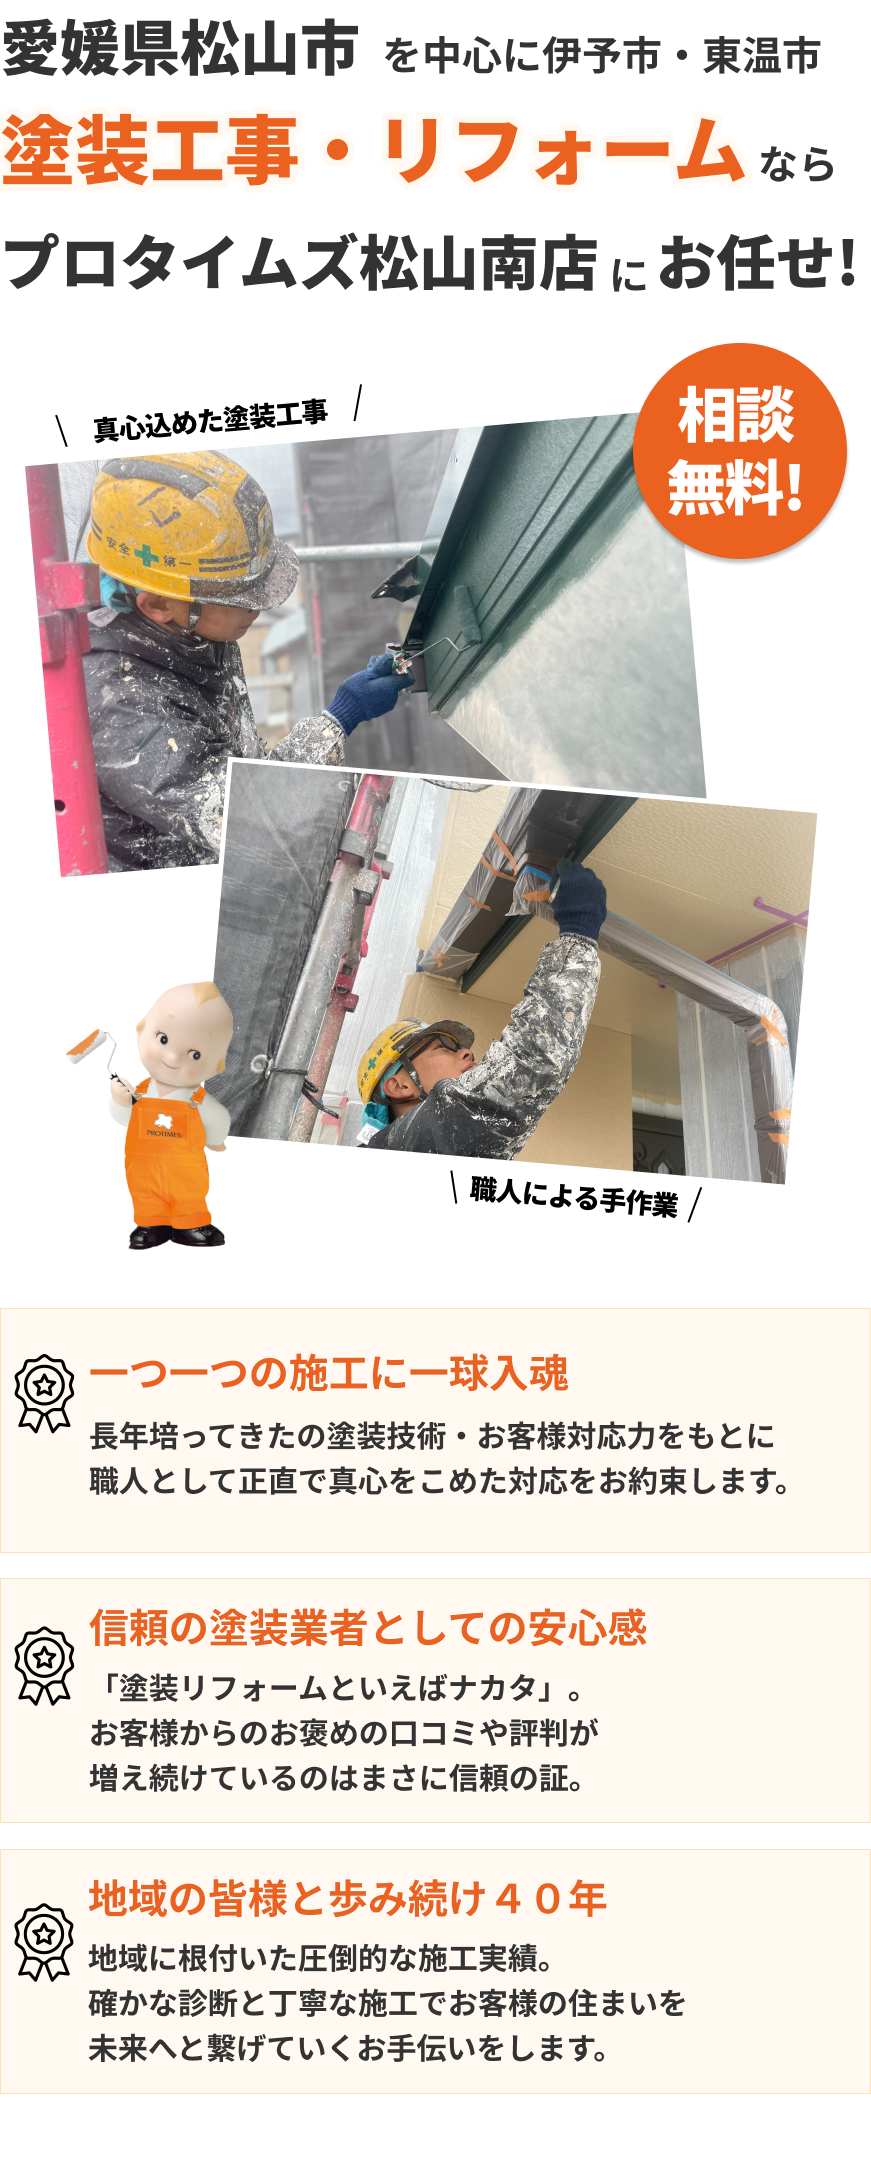 愛媛県松山市で塗装工事業・リフォーム業を実現するなら株式会社プロタイムズへ!